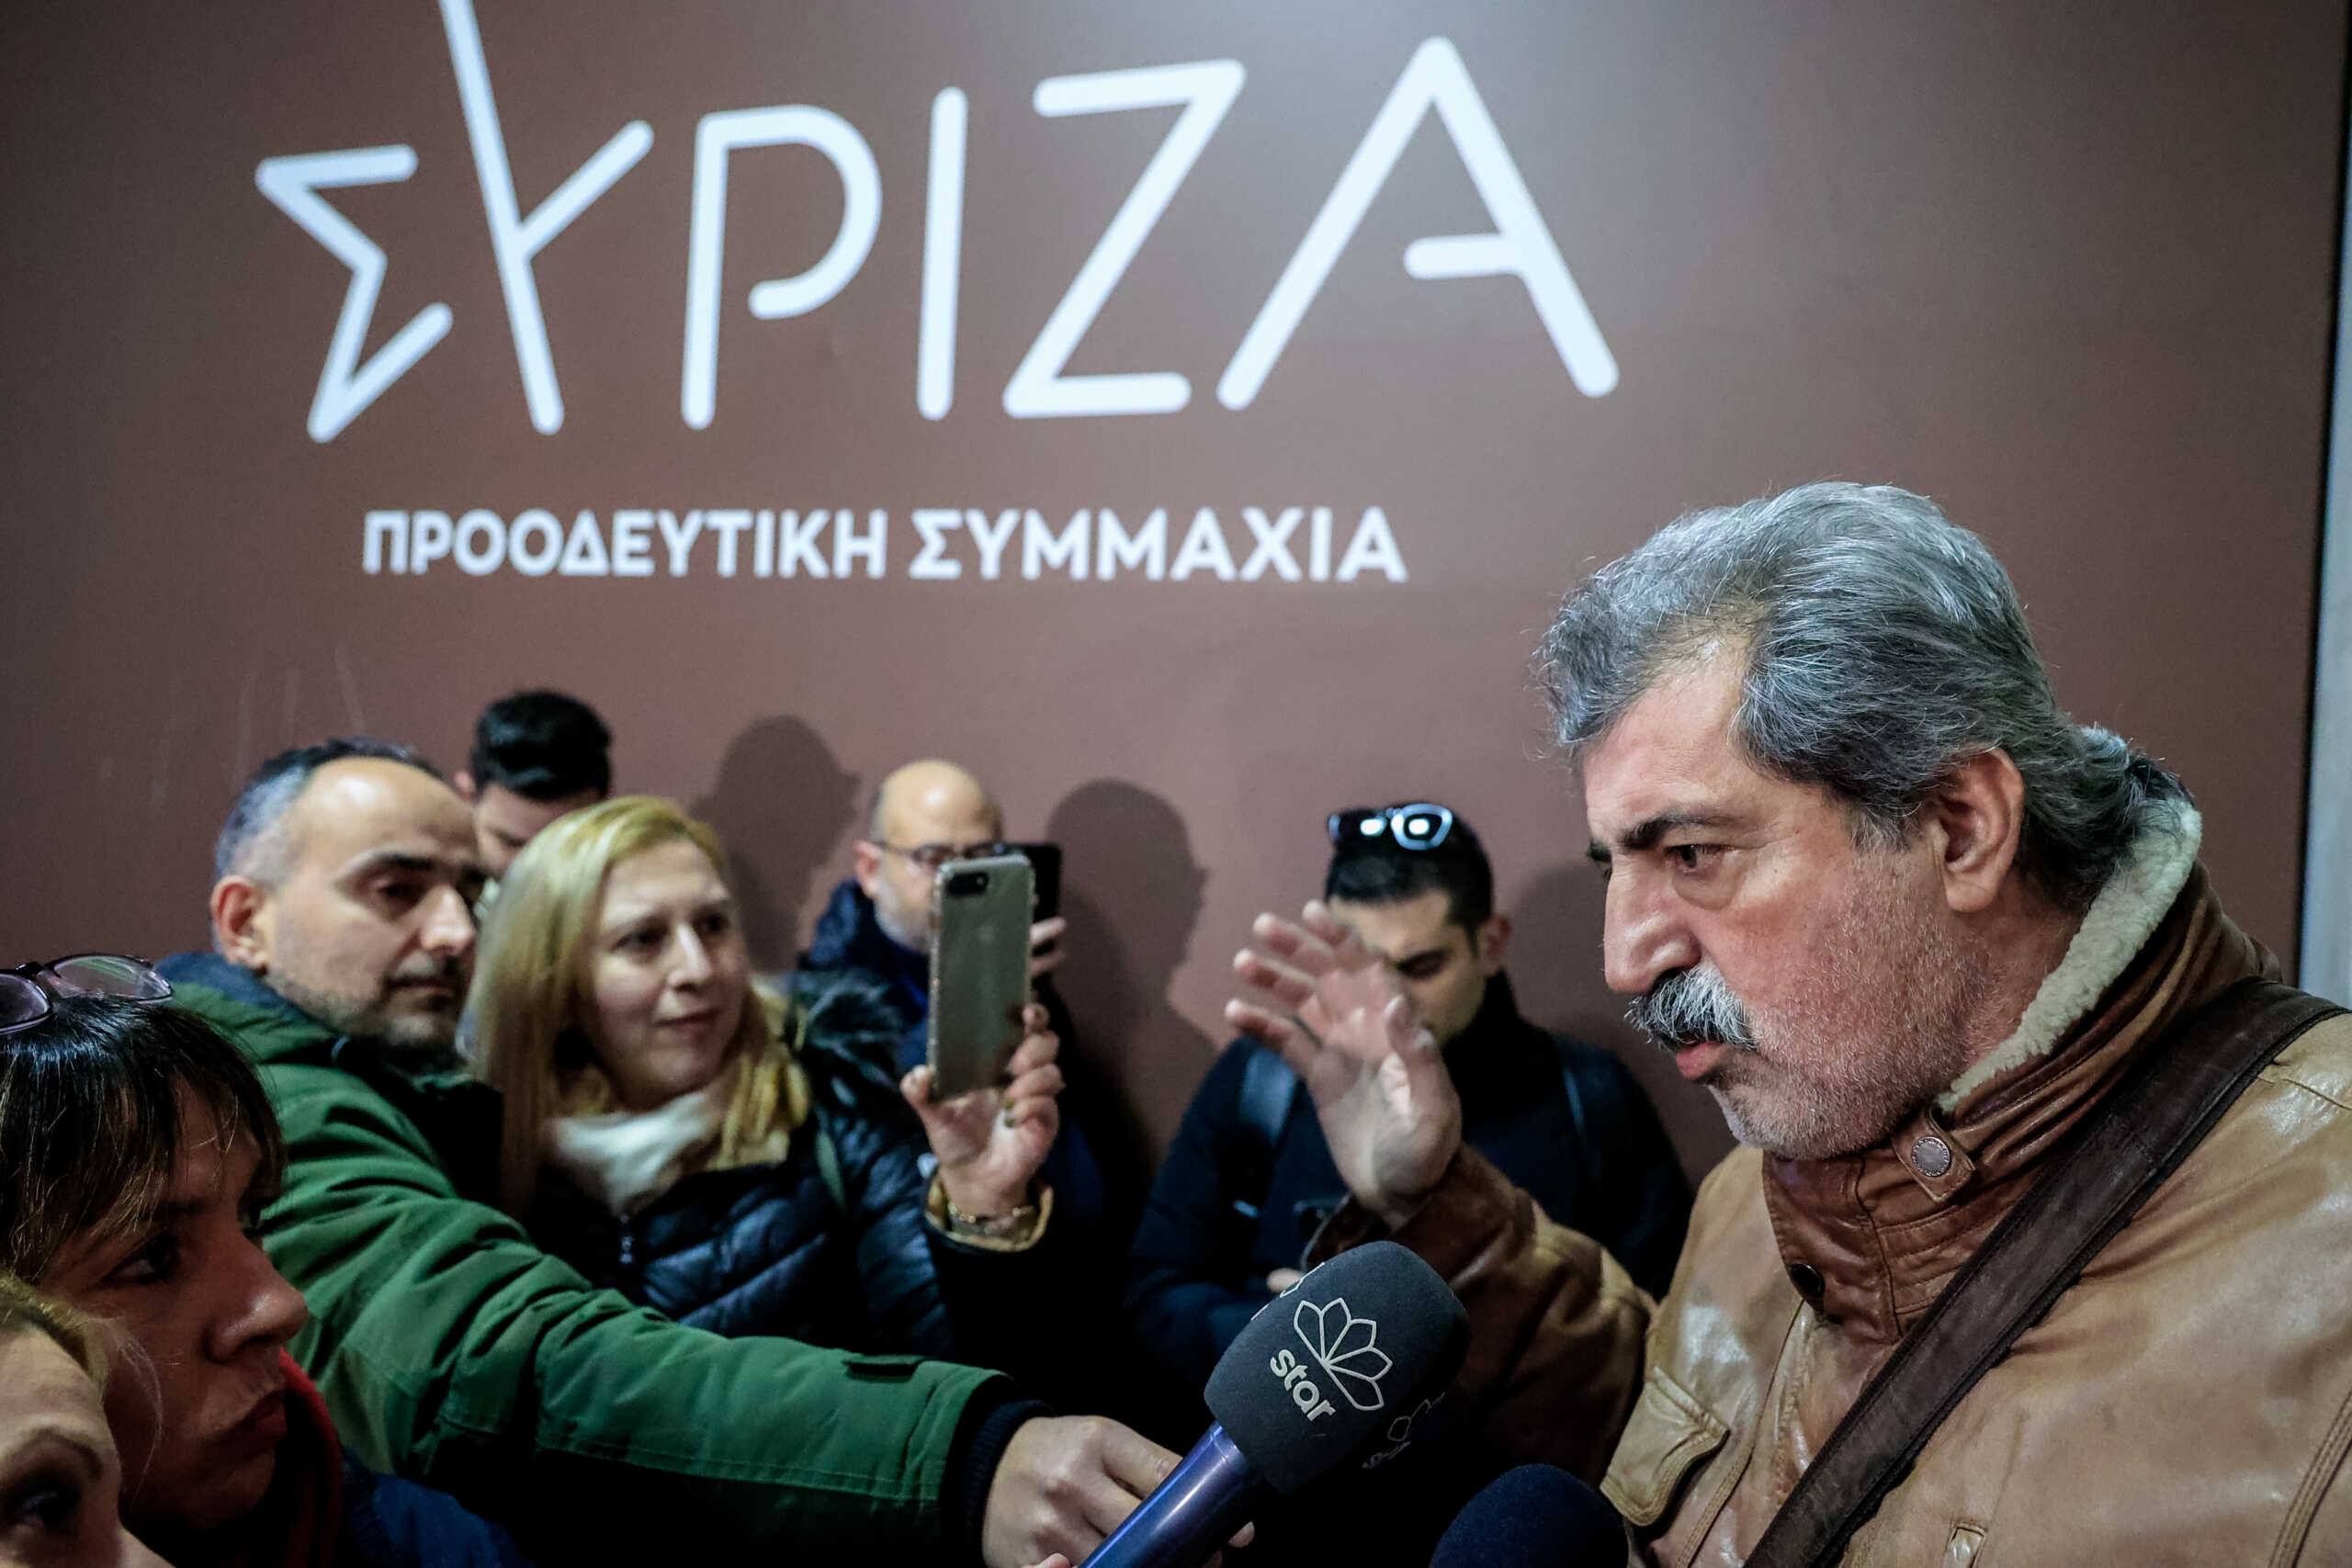 ΣΥΡΙΖΑ: Τελευταίος και οργισμένος πήγε τελικά στην συνεδρίαση της Πολιτικής Γραμματείας ο Παύλος Πολάκης